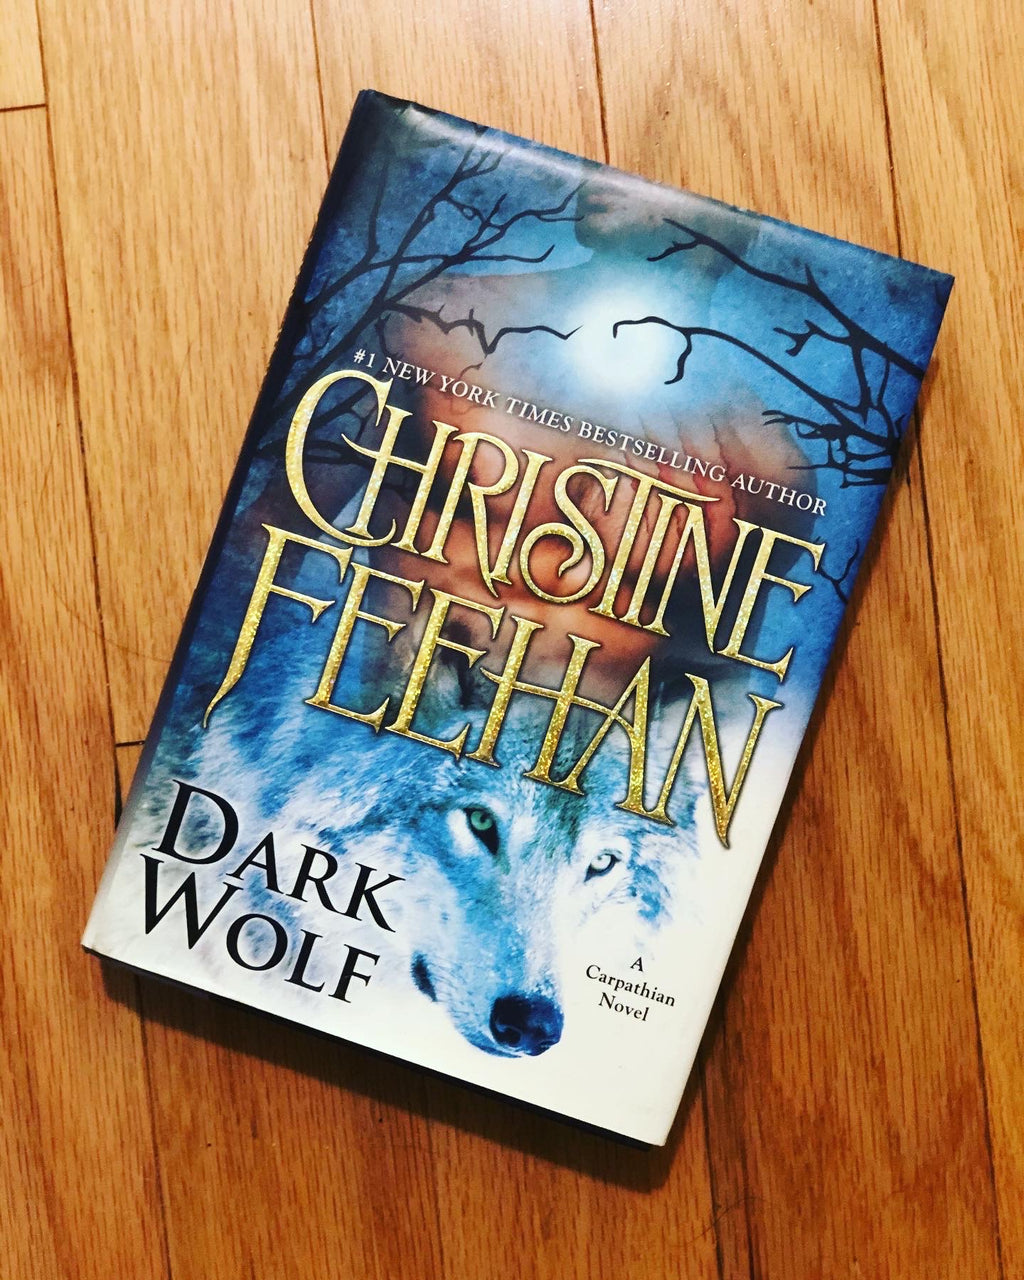 Dark Wolf- By Christine Feehan